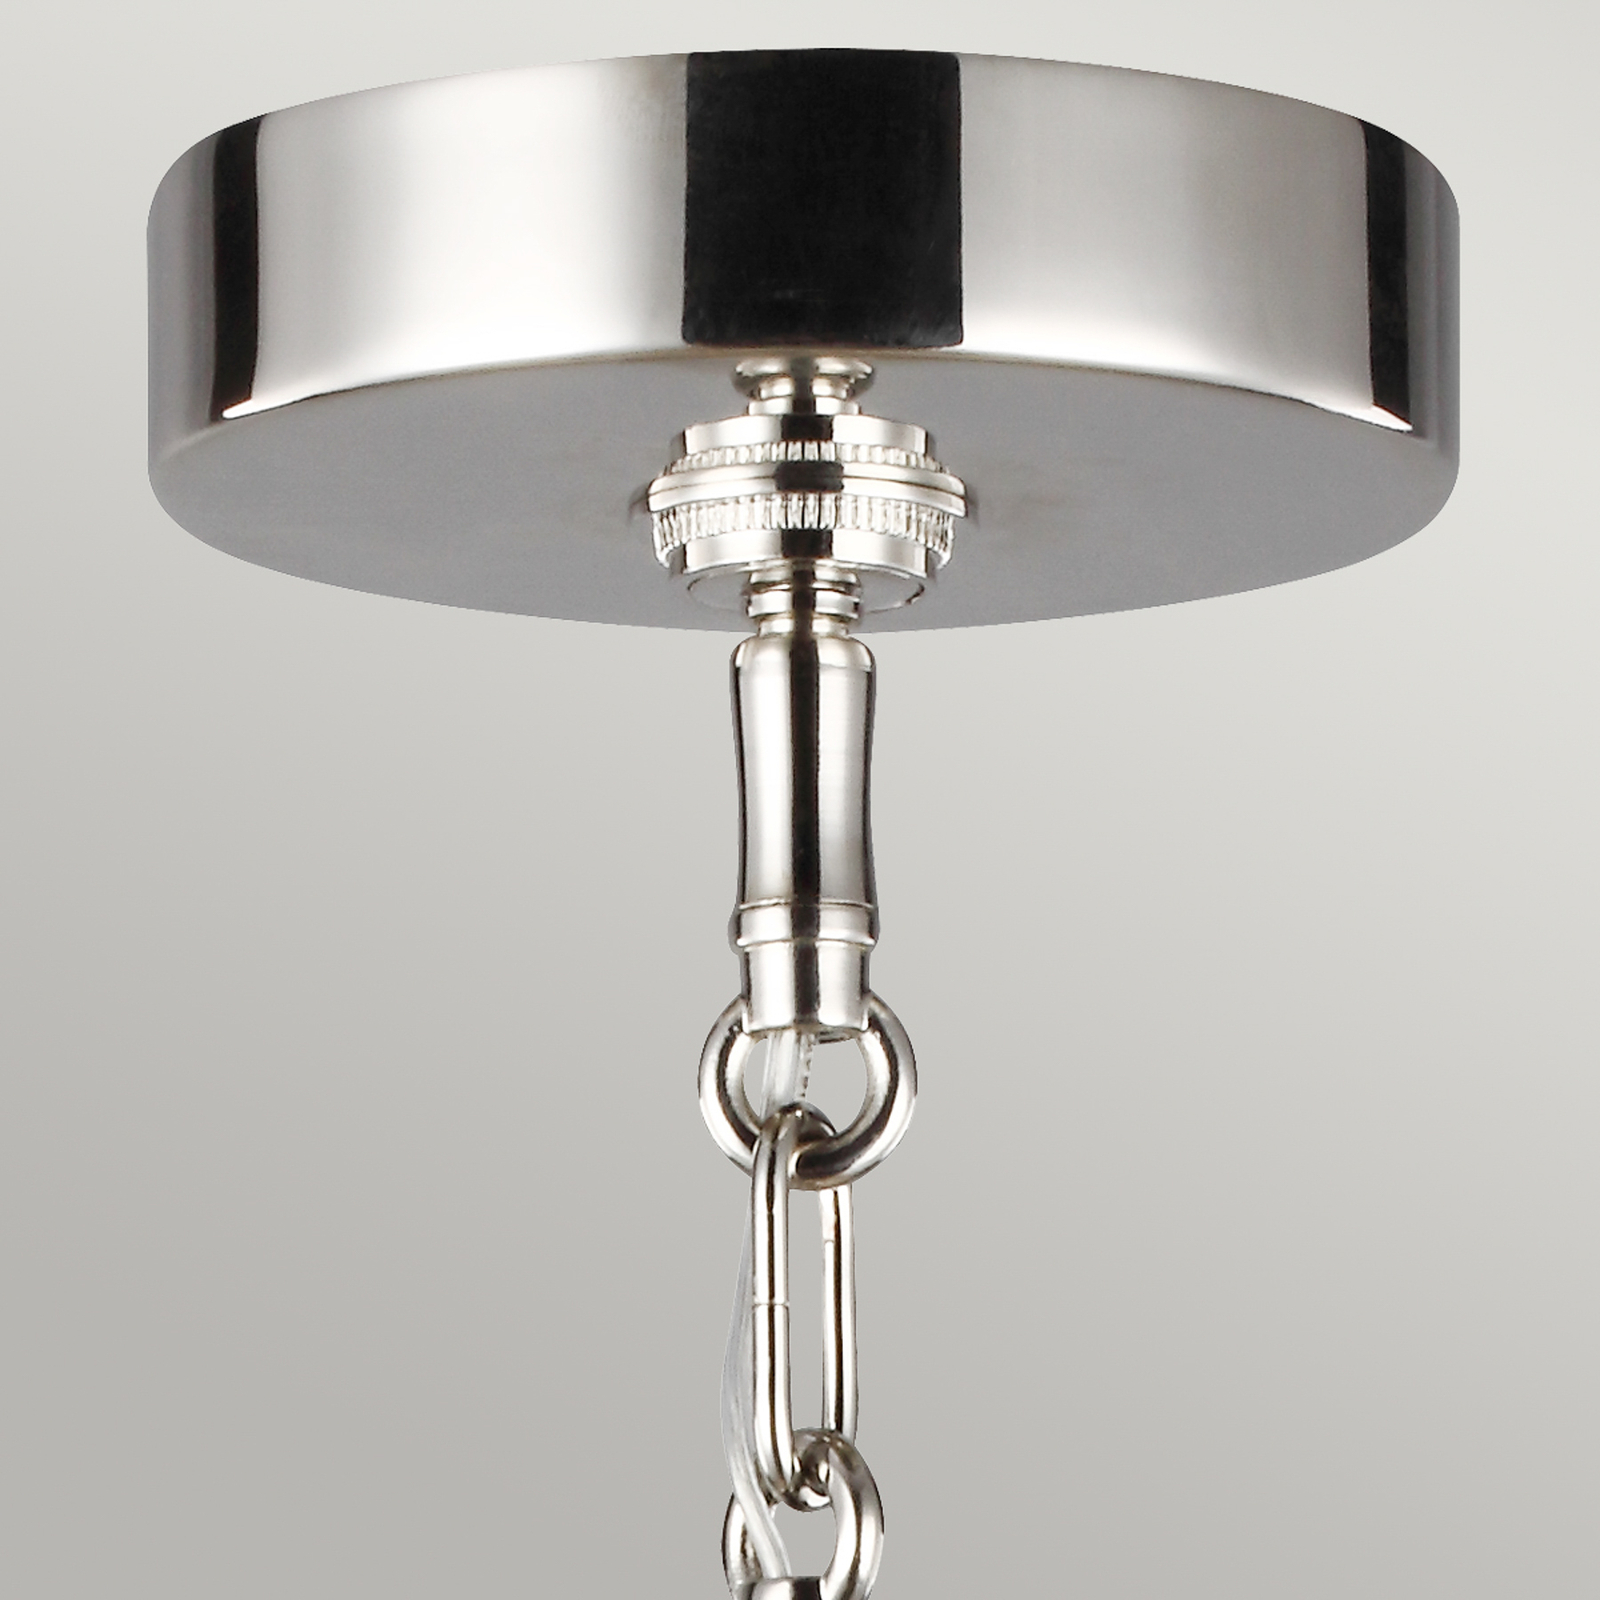 Hanglamp Harper met rookglas kap, 1-lamp